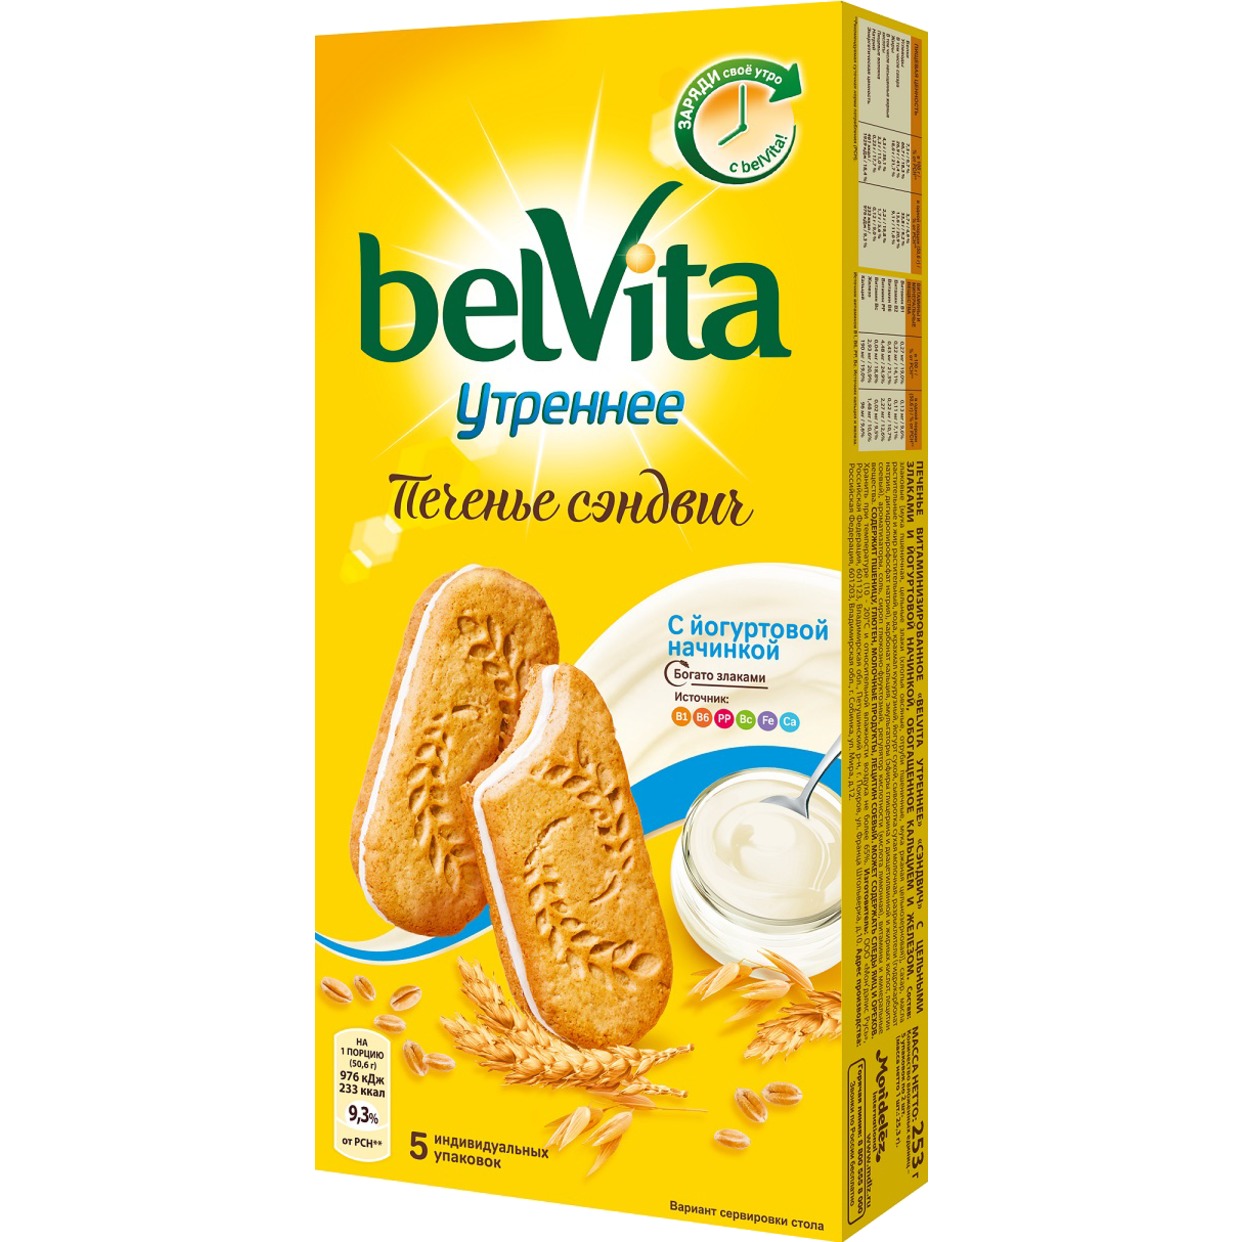 Печенье Belvita Утреннее со злаками и йогуртовой начинкой 253г по акции в Пятерочке